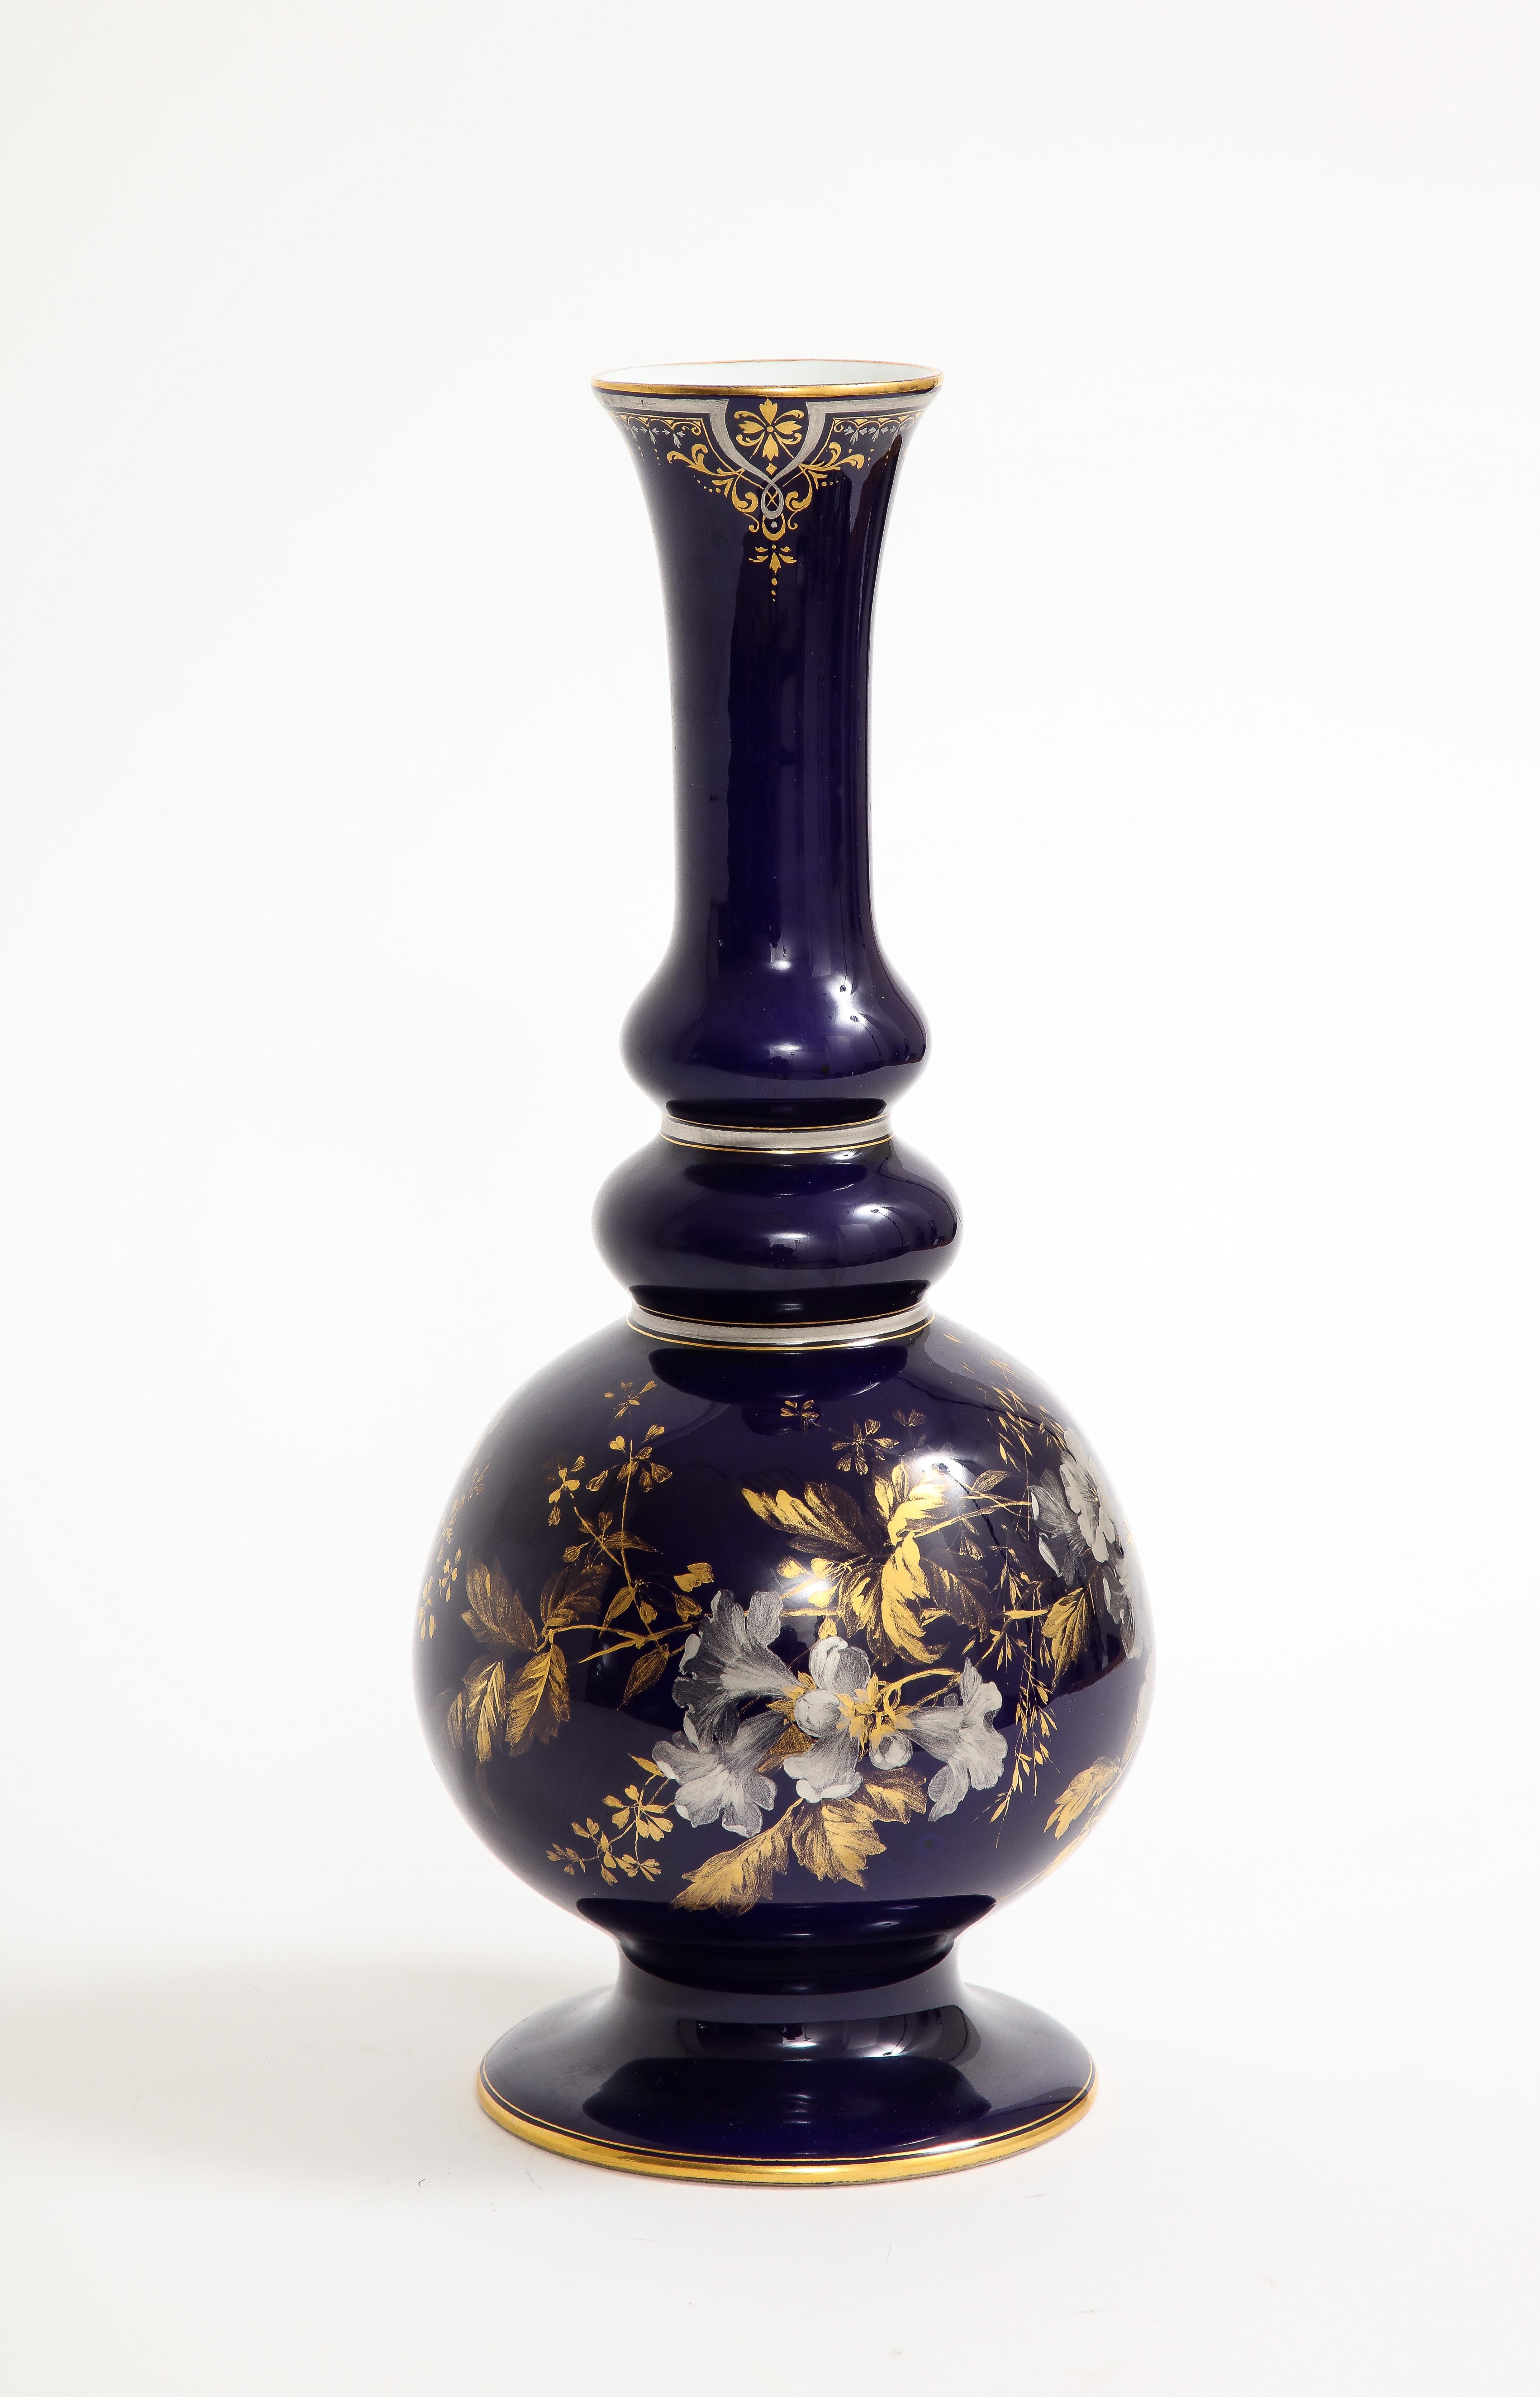 Eine sehr wichtige und seltene Vase aus Meissener Porzellan mit kobaltblauem Grund und handgemaltem Platin- und Golddekor.  Eine exquisite und feine kobaltgeschliffene Meissener Porzellanvase des 19. Jahrhunderts mit zarten, naturalistisch